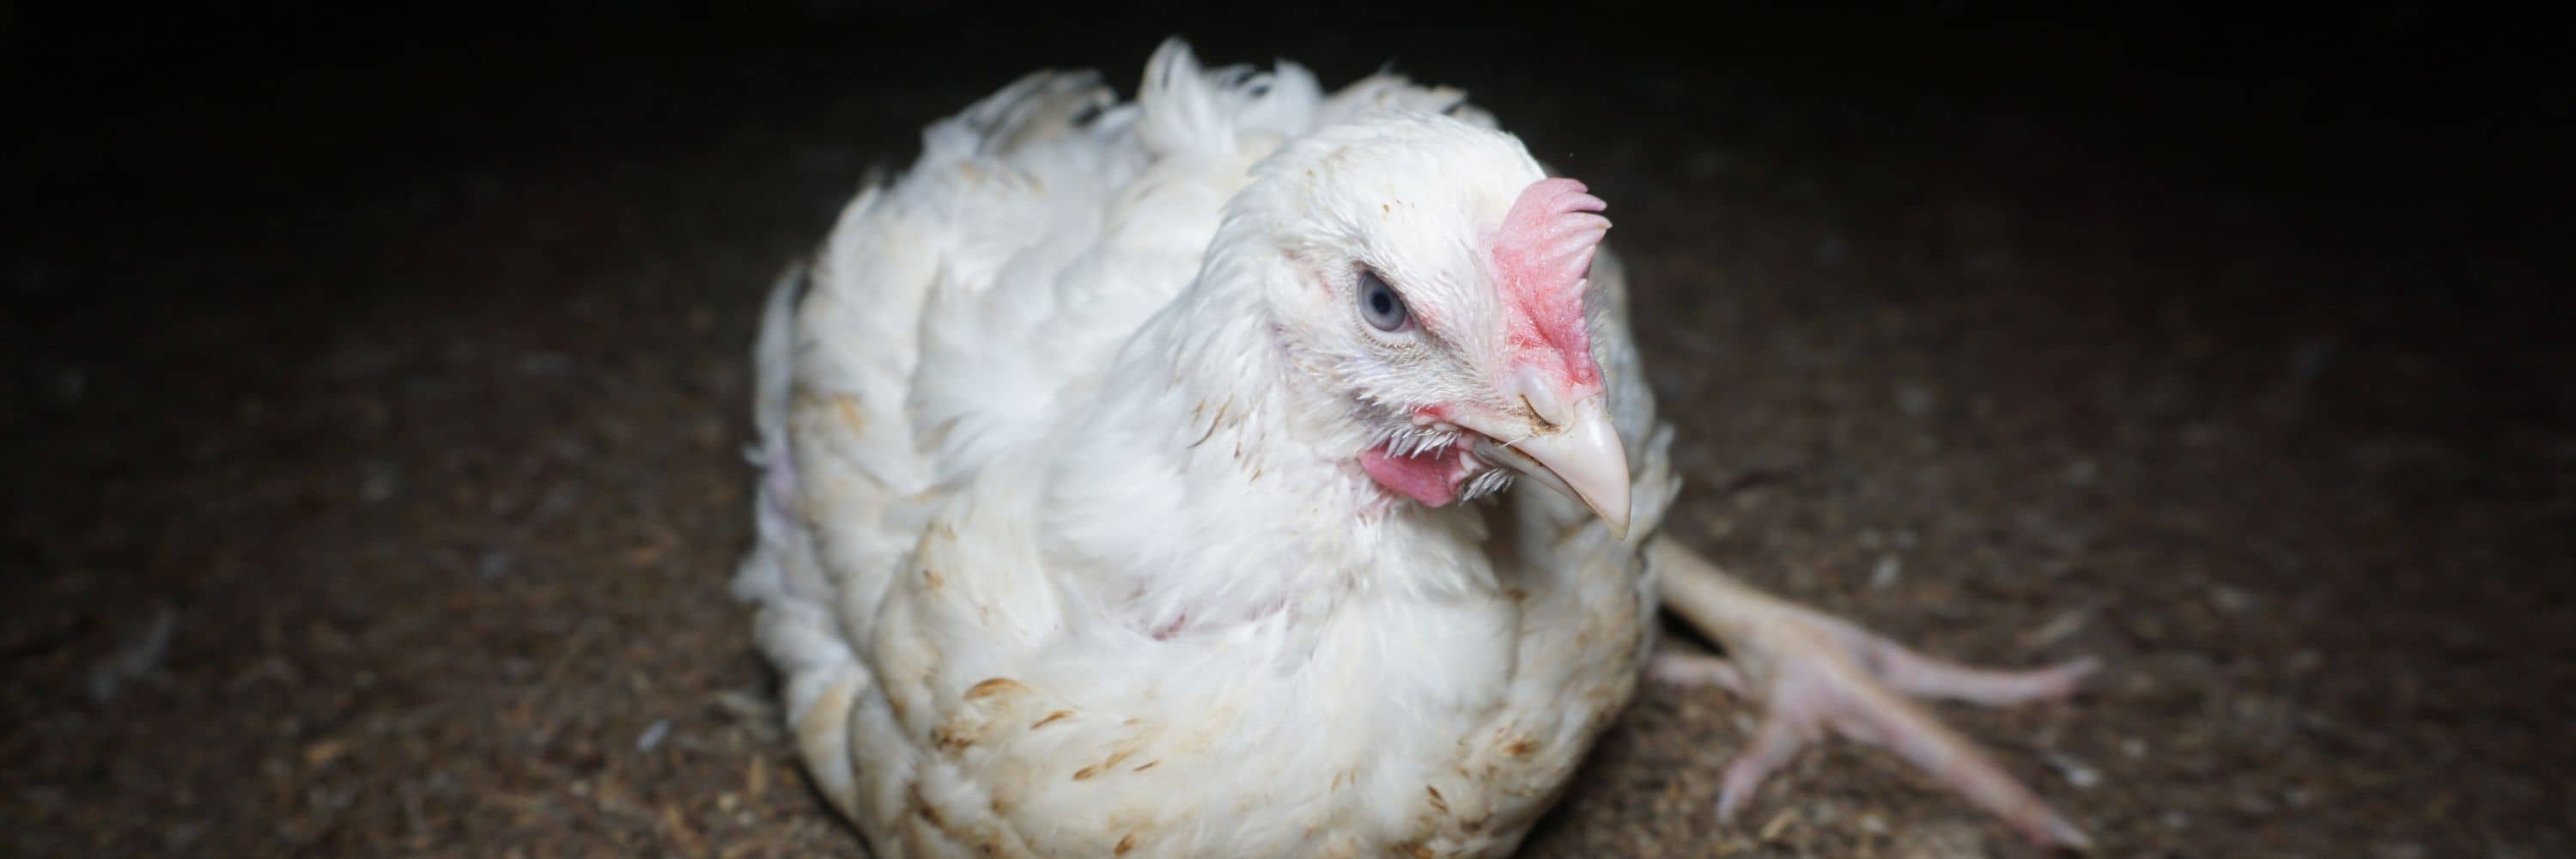 Pollo en una granja industrial. Imagen de investigación de Igualdad Animal.